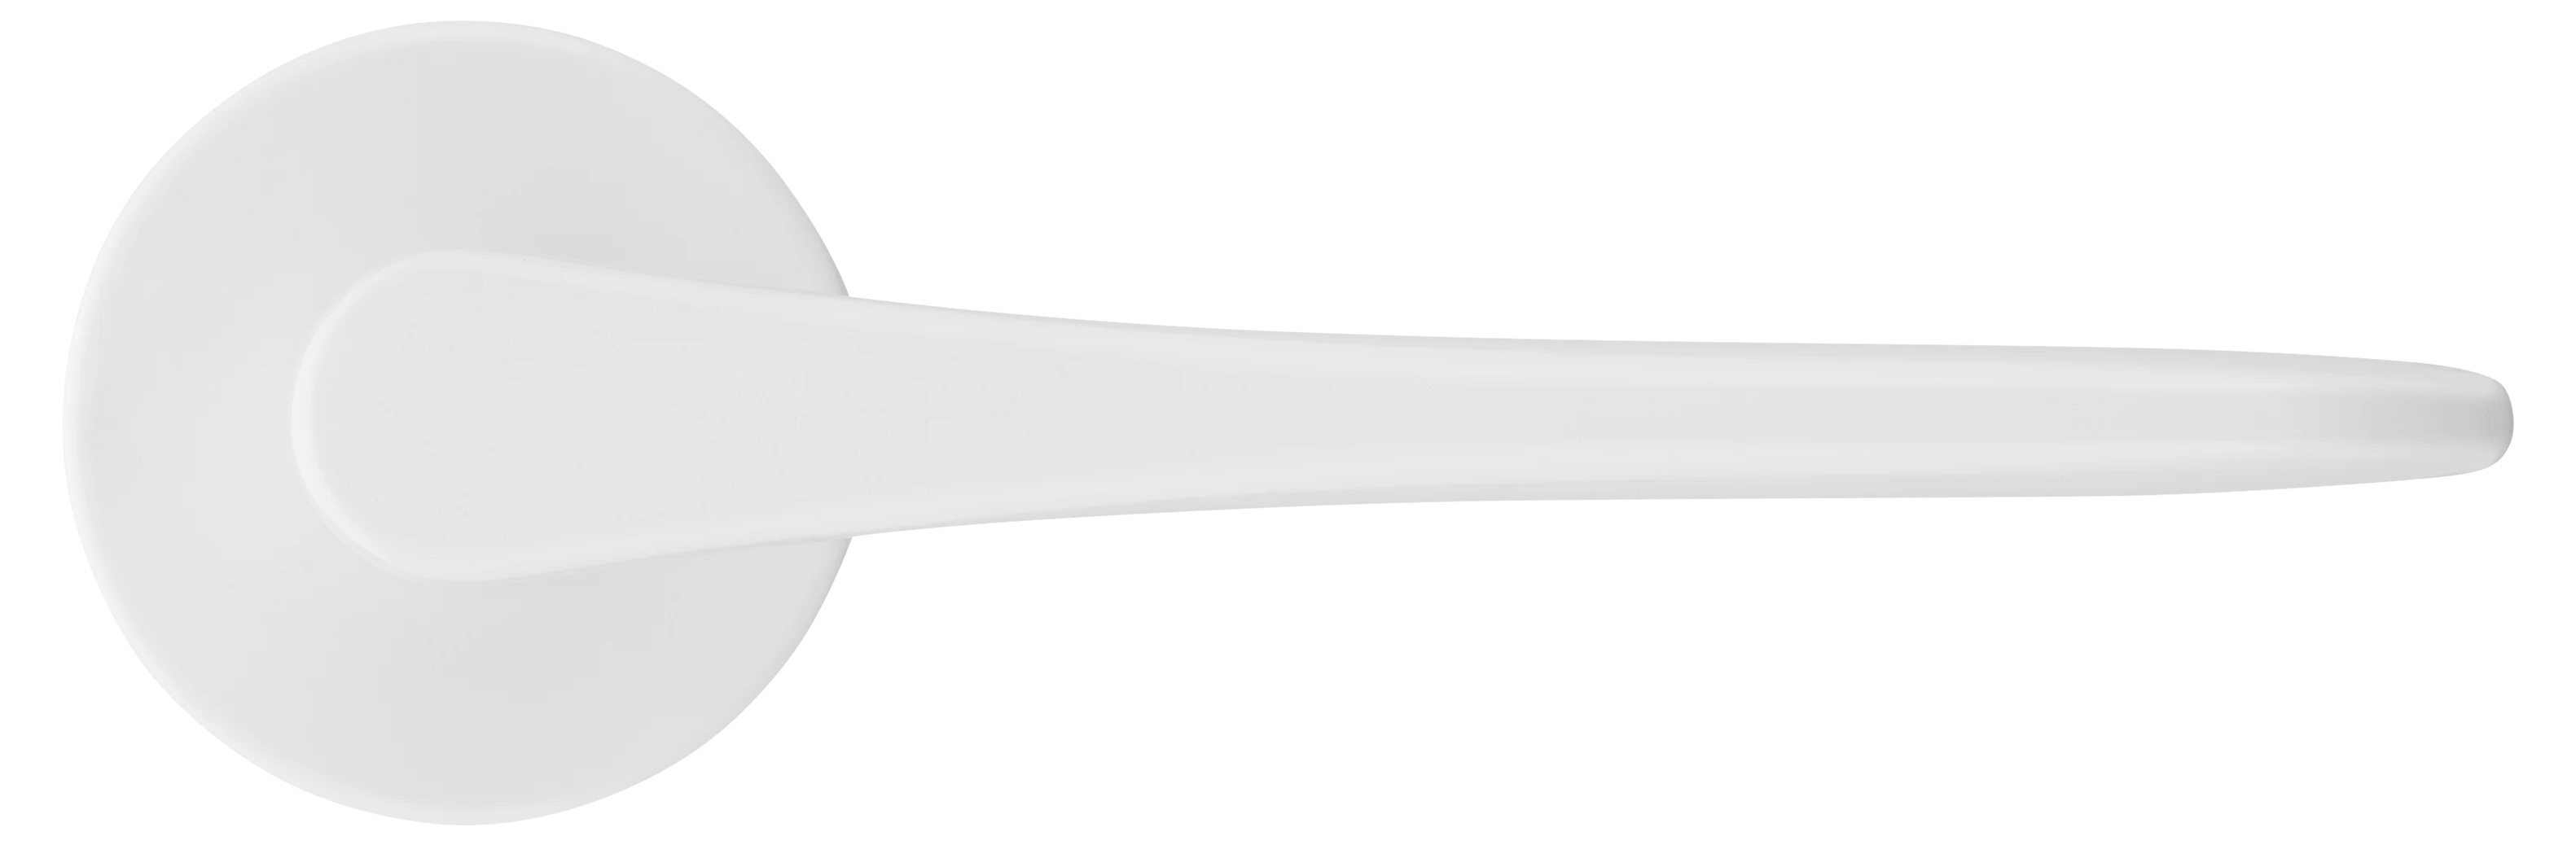 AULA R5 BIA, ручка дверная на розетке 7мм, цвет -  белый фото купить в Актау